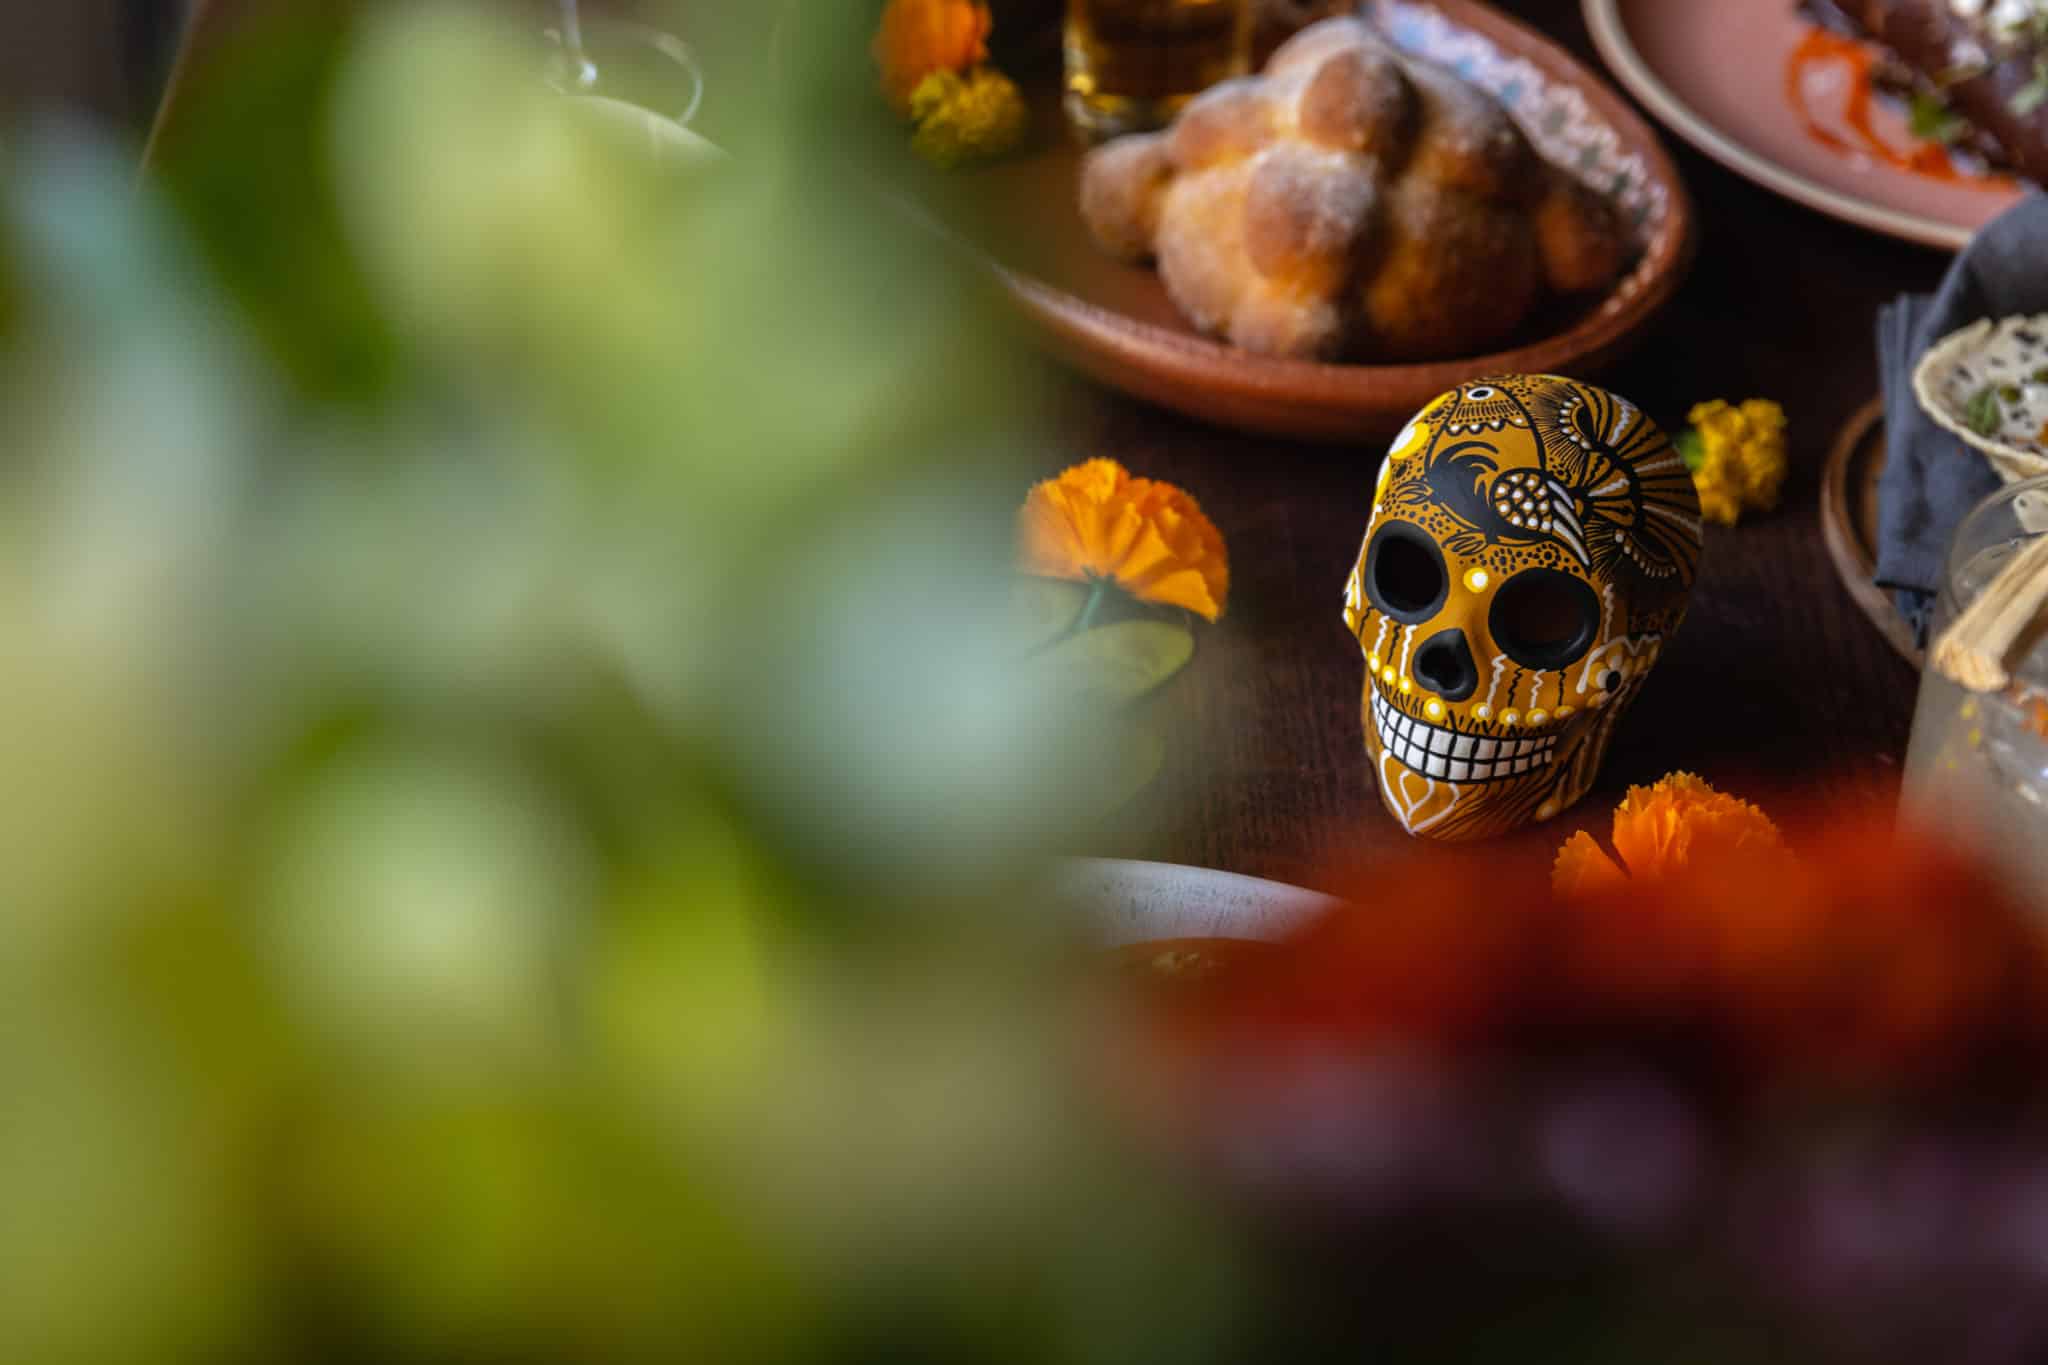 Skull on table for Dia de los Muertos